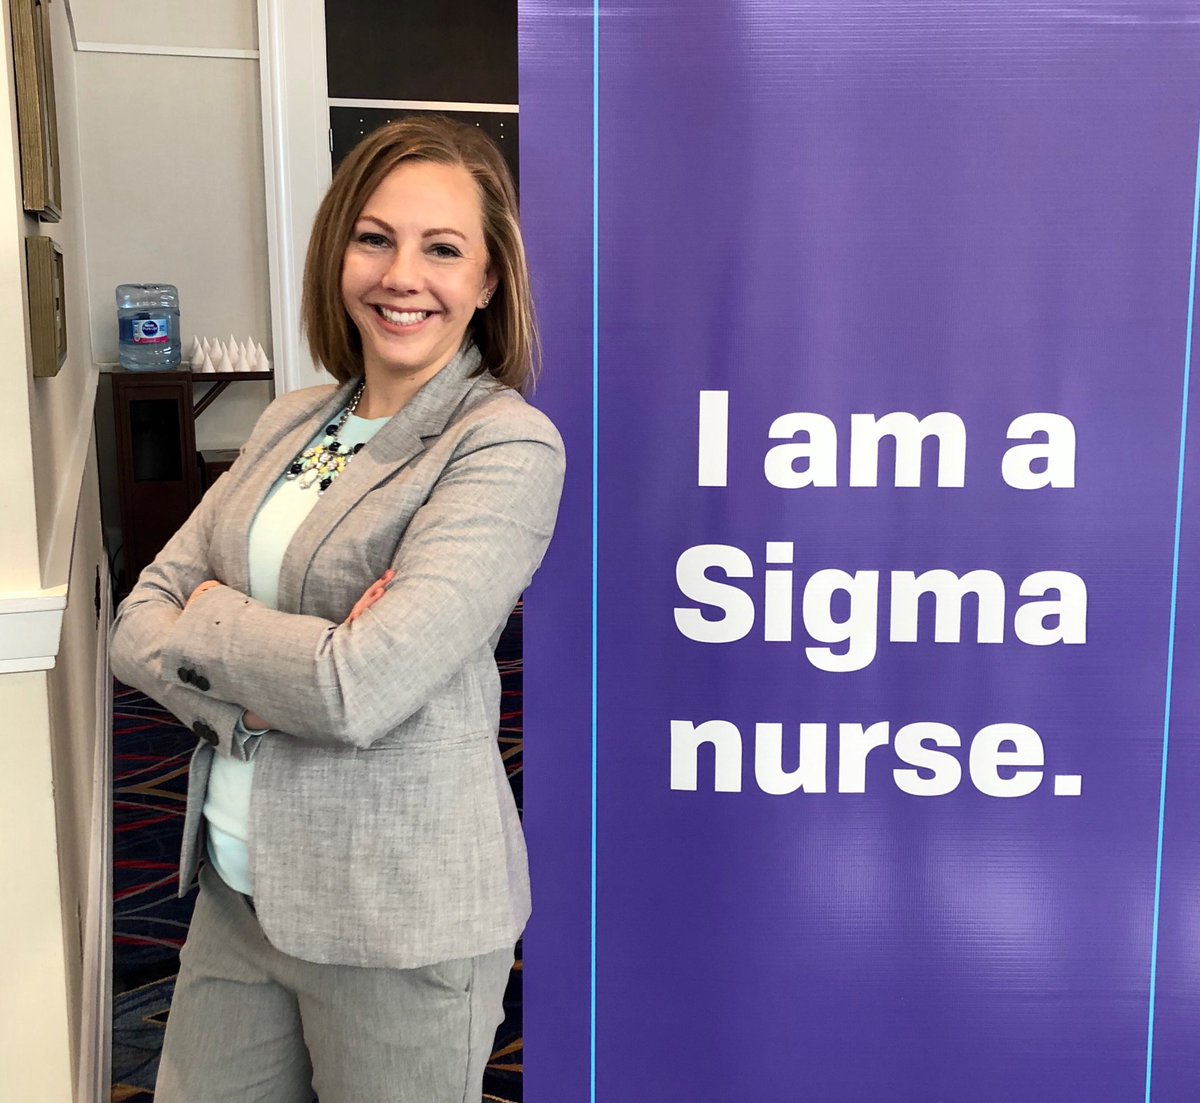 Ready to start a great weekend #SigmaConv19  #SigmaVolunteer
#NursesWhoTweet  @SigmaNursing  #IamaSigmaNurse